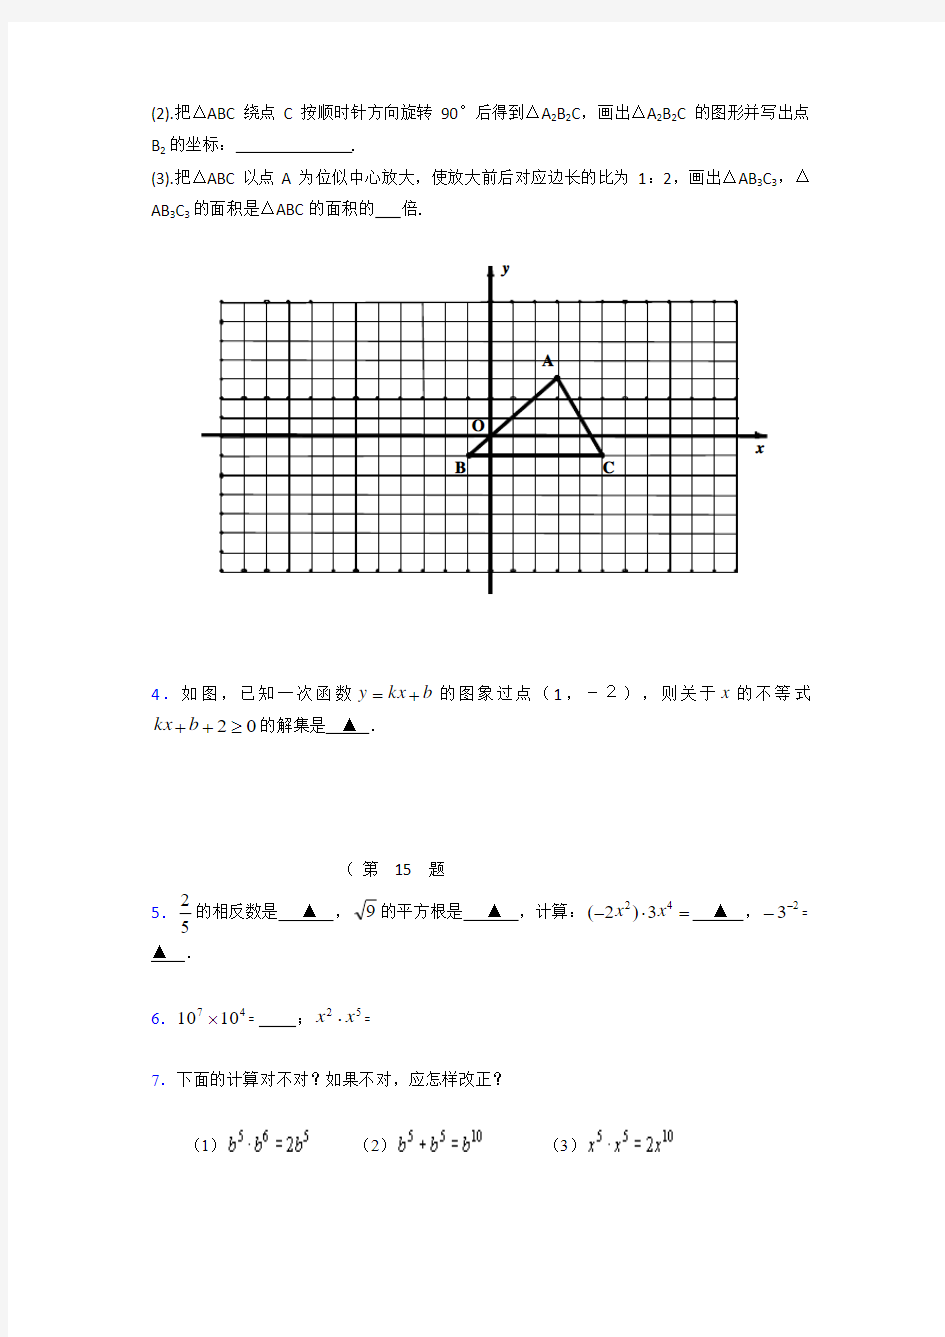 精选初三数学期末考试题库(含标准答案)